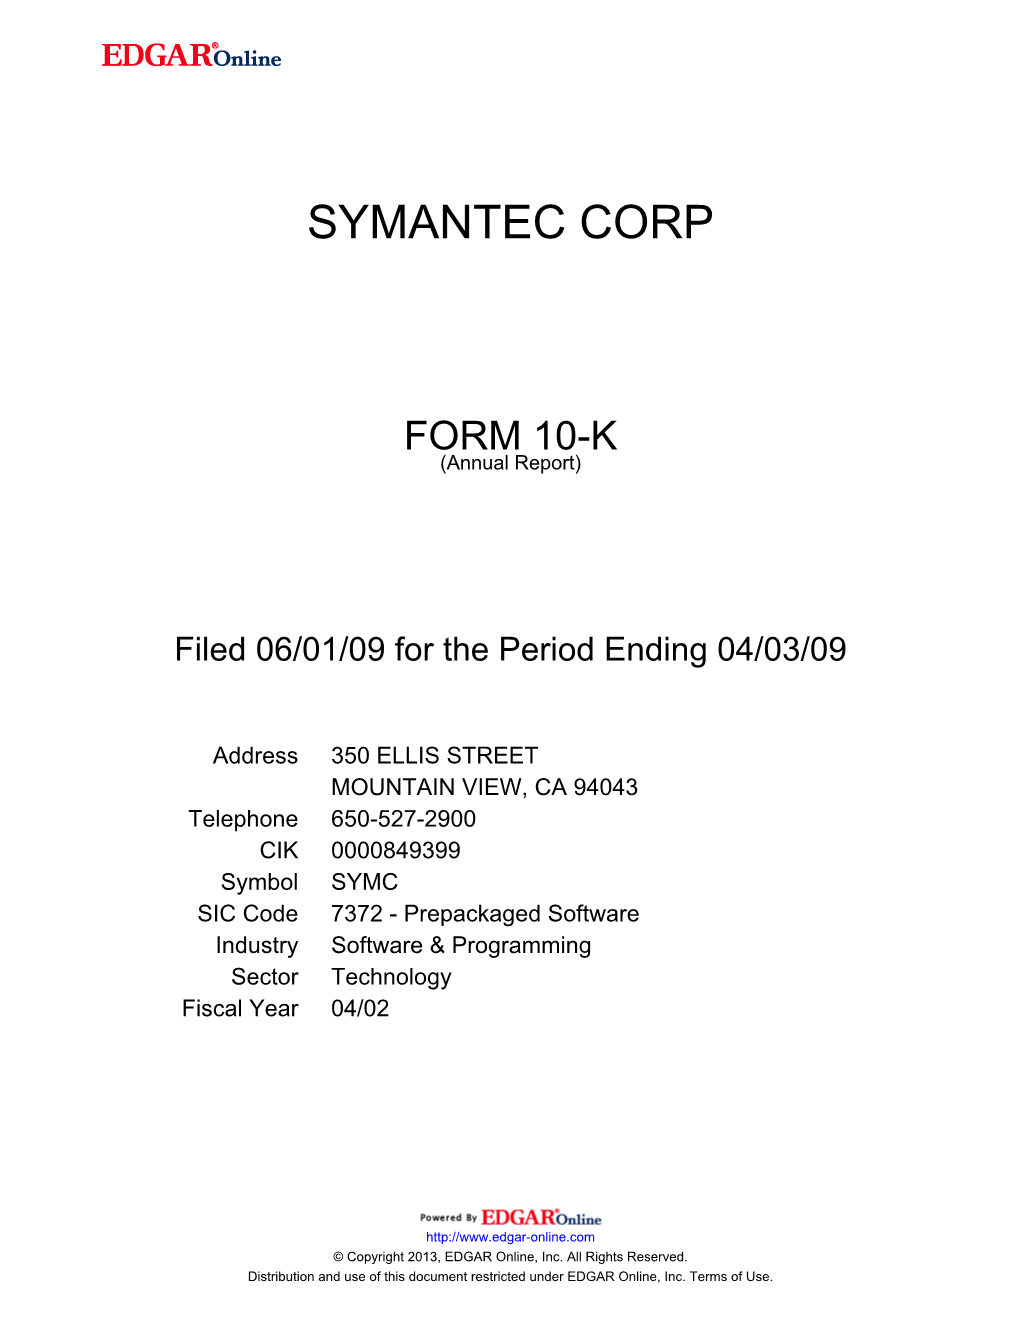 Symantec Corp